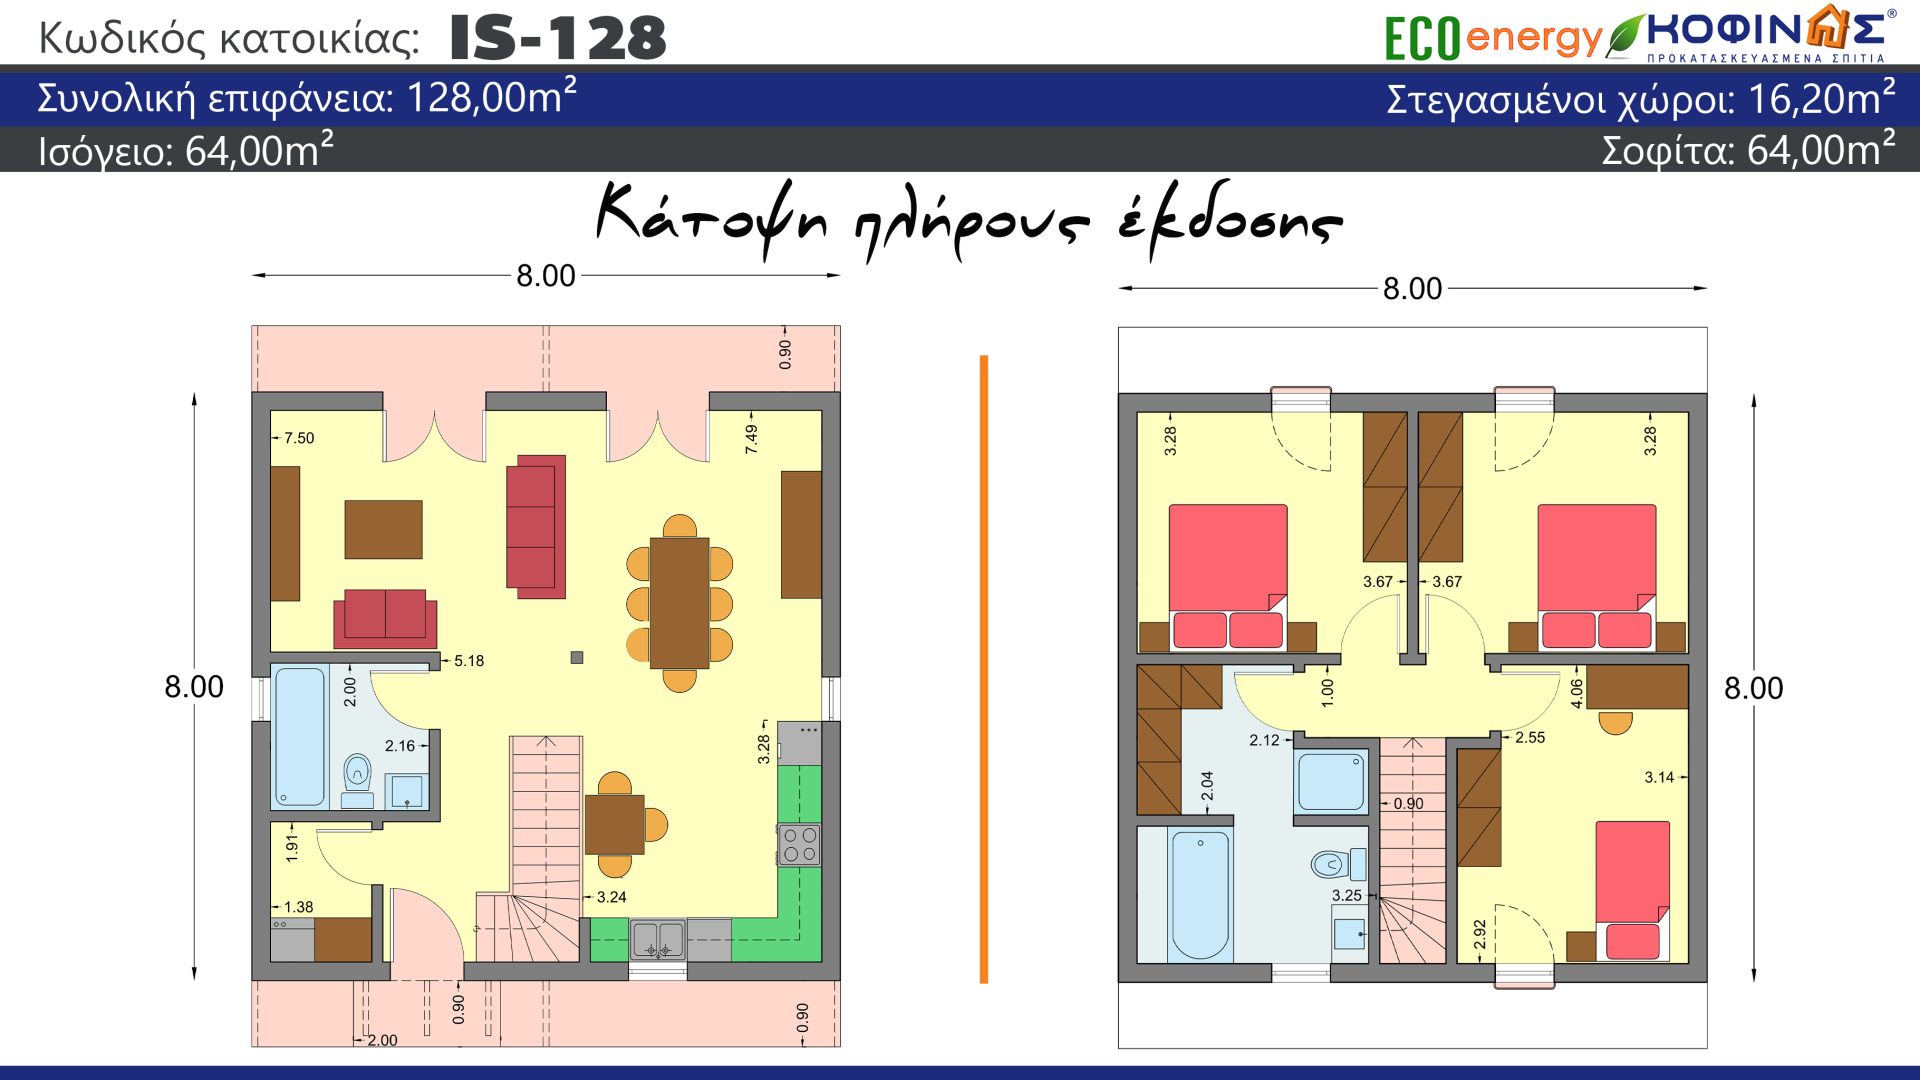 Ισόγεια Κατοικία με Σοφίτα IS-128, συνολικής επιφάνειας 128.00 τ.μ. ,συνολική επιφάνεια στεγασμένων χώρων 16,20 τ.μ.